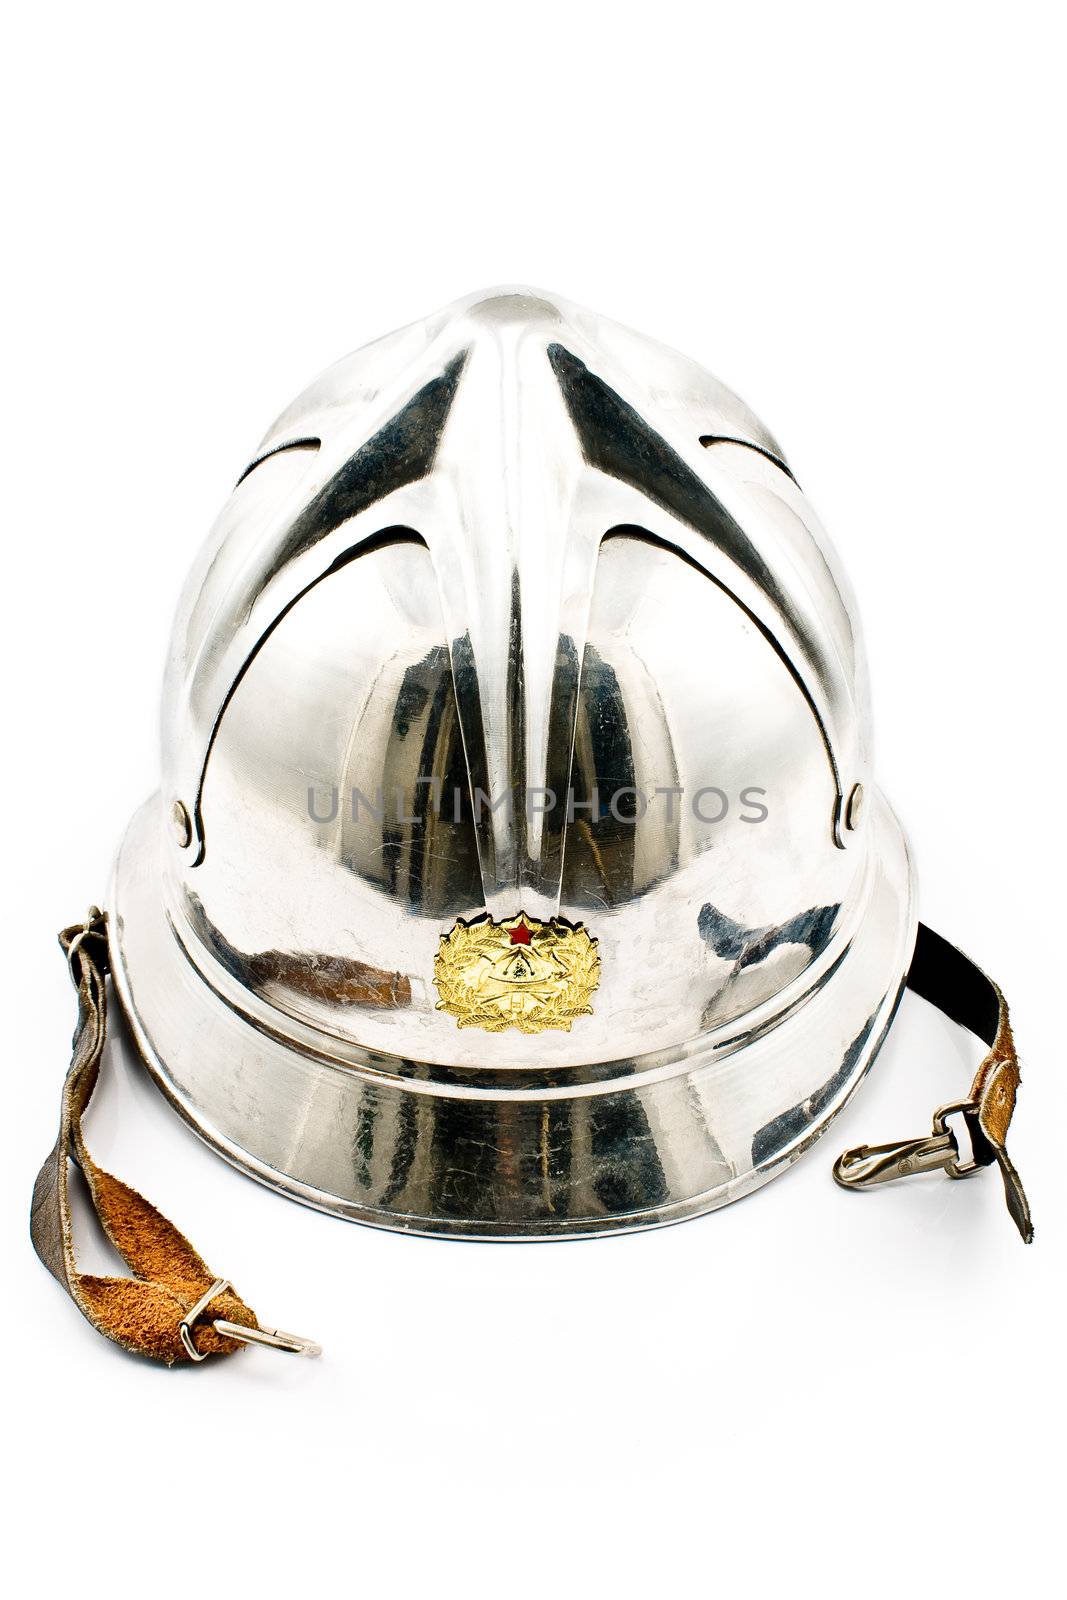 Old fireman's metallic helmet by gavran333